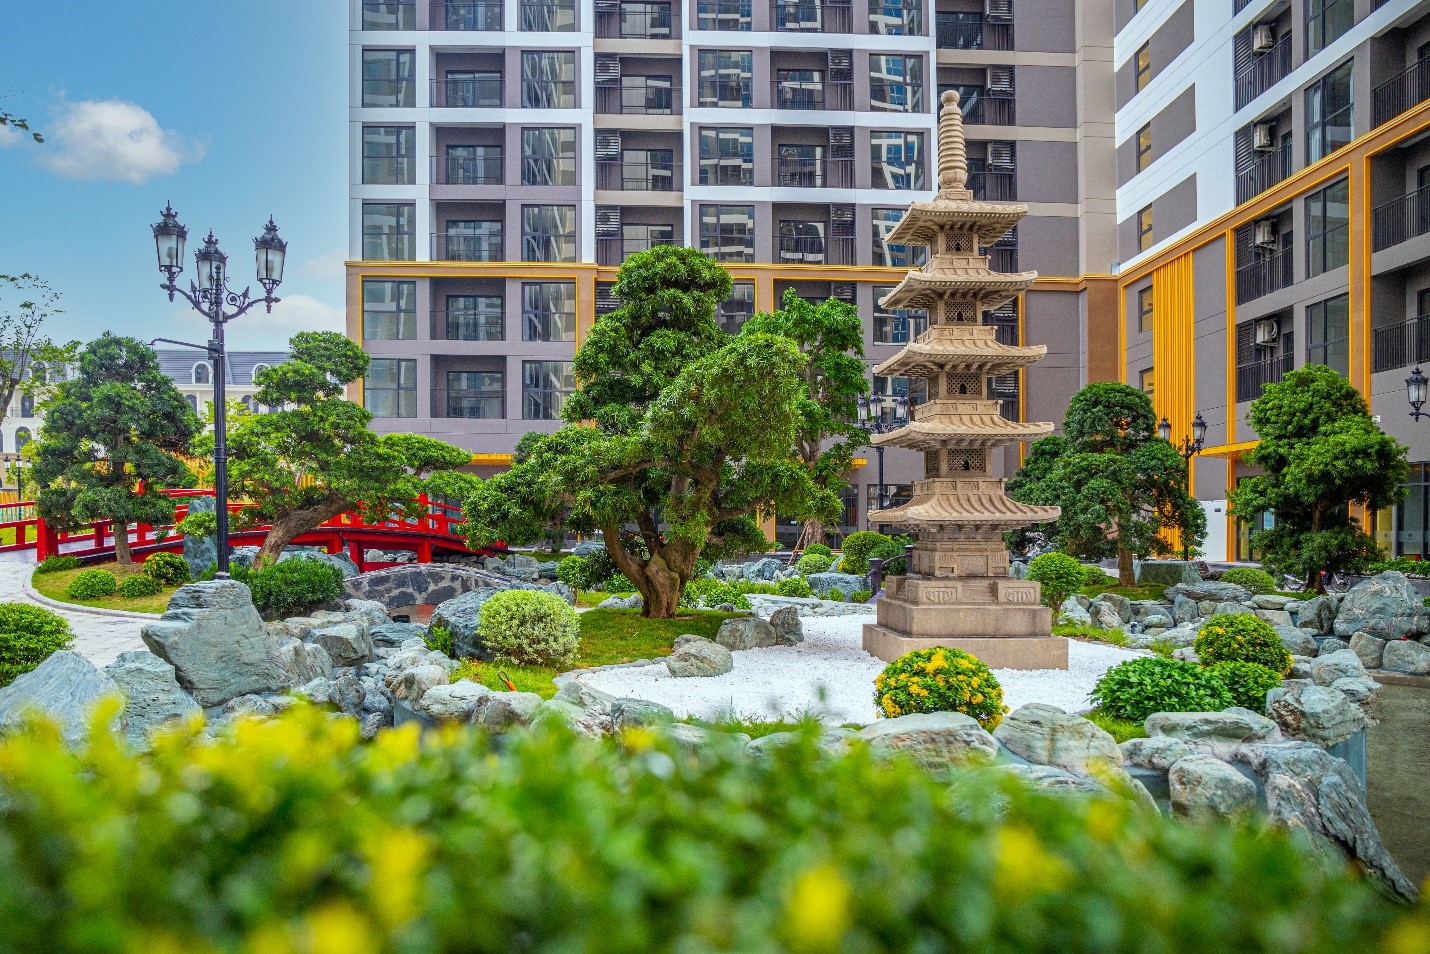 Vườn Nhật độc bản chuẩn Zen 16.000 m2 – Biểu tượng an nhiên, tĩnh tại của Phân khu cao cấp The Zenpark